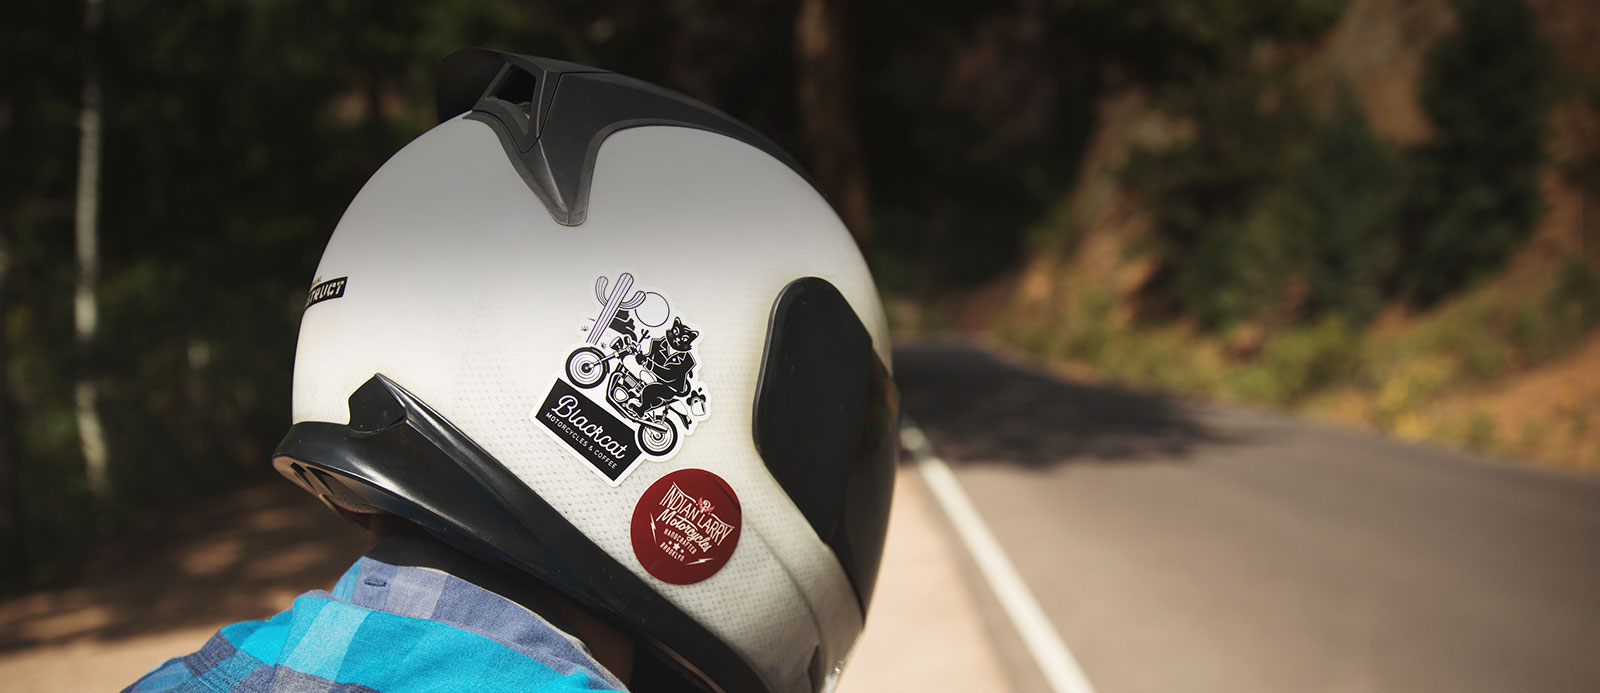 Stickers para cascos de motocicleta